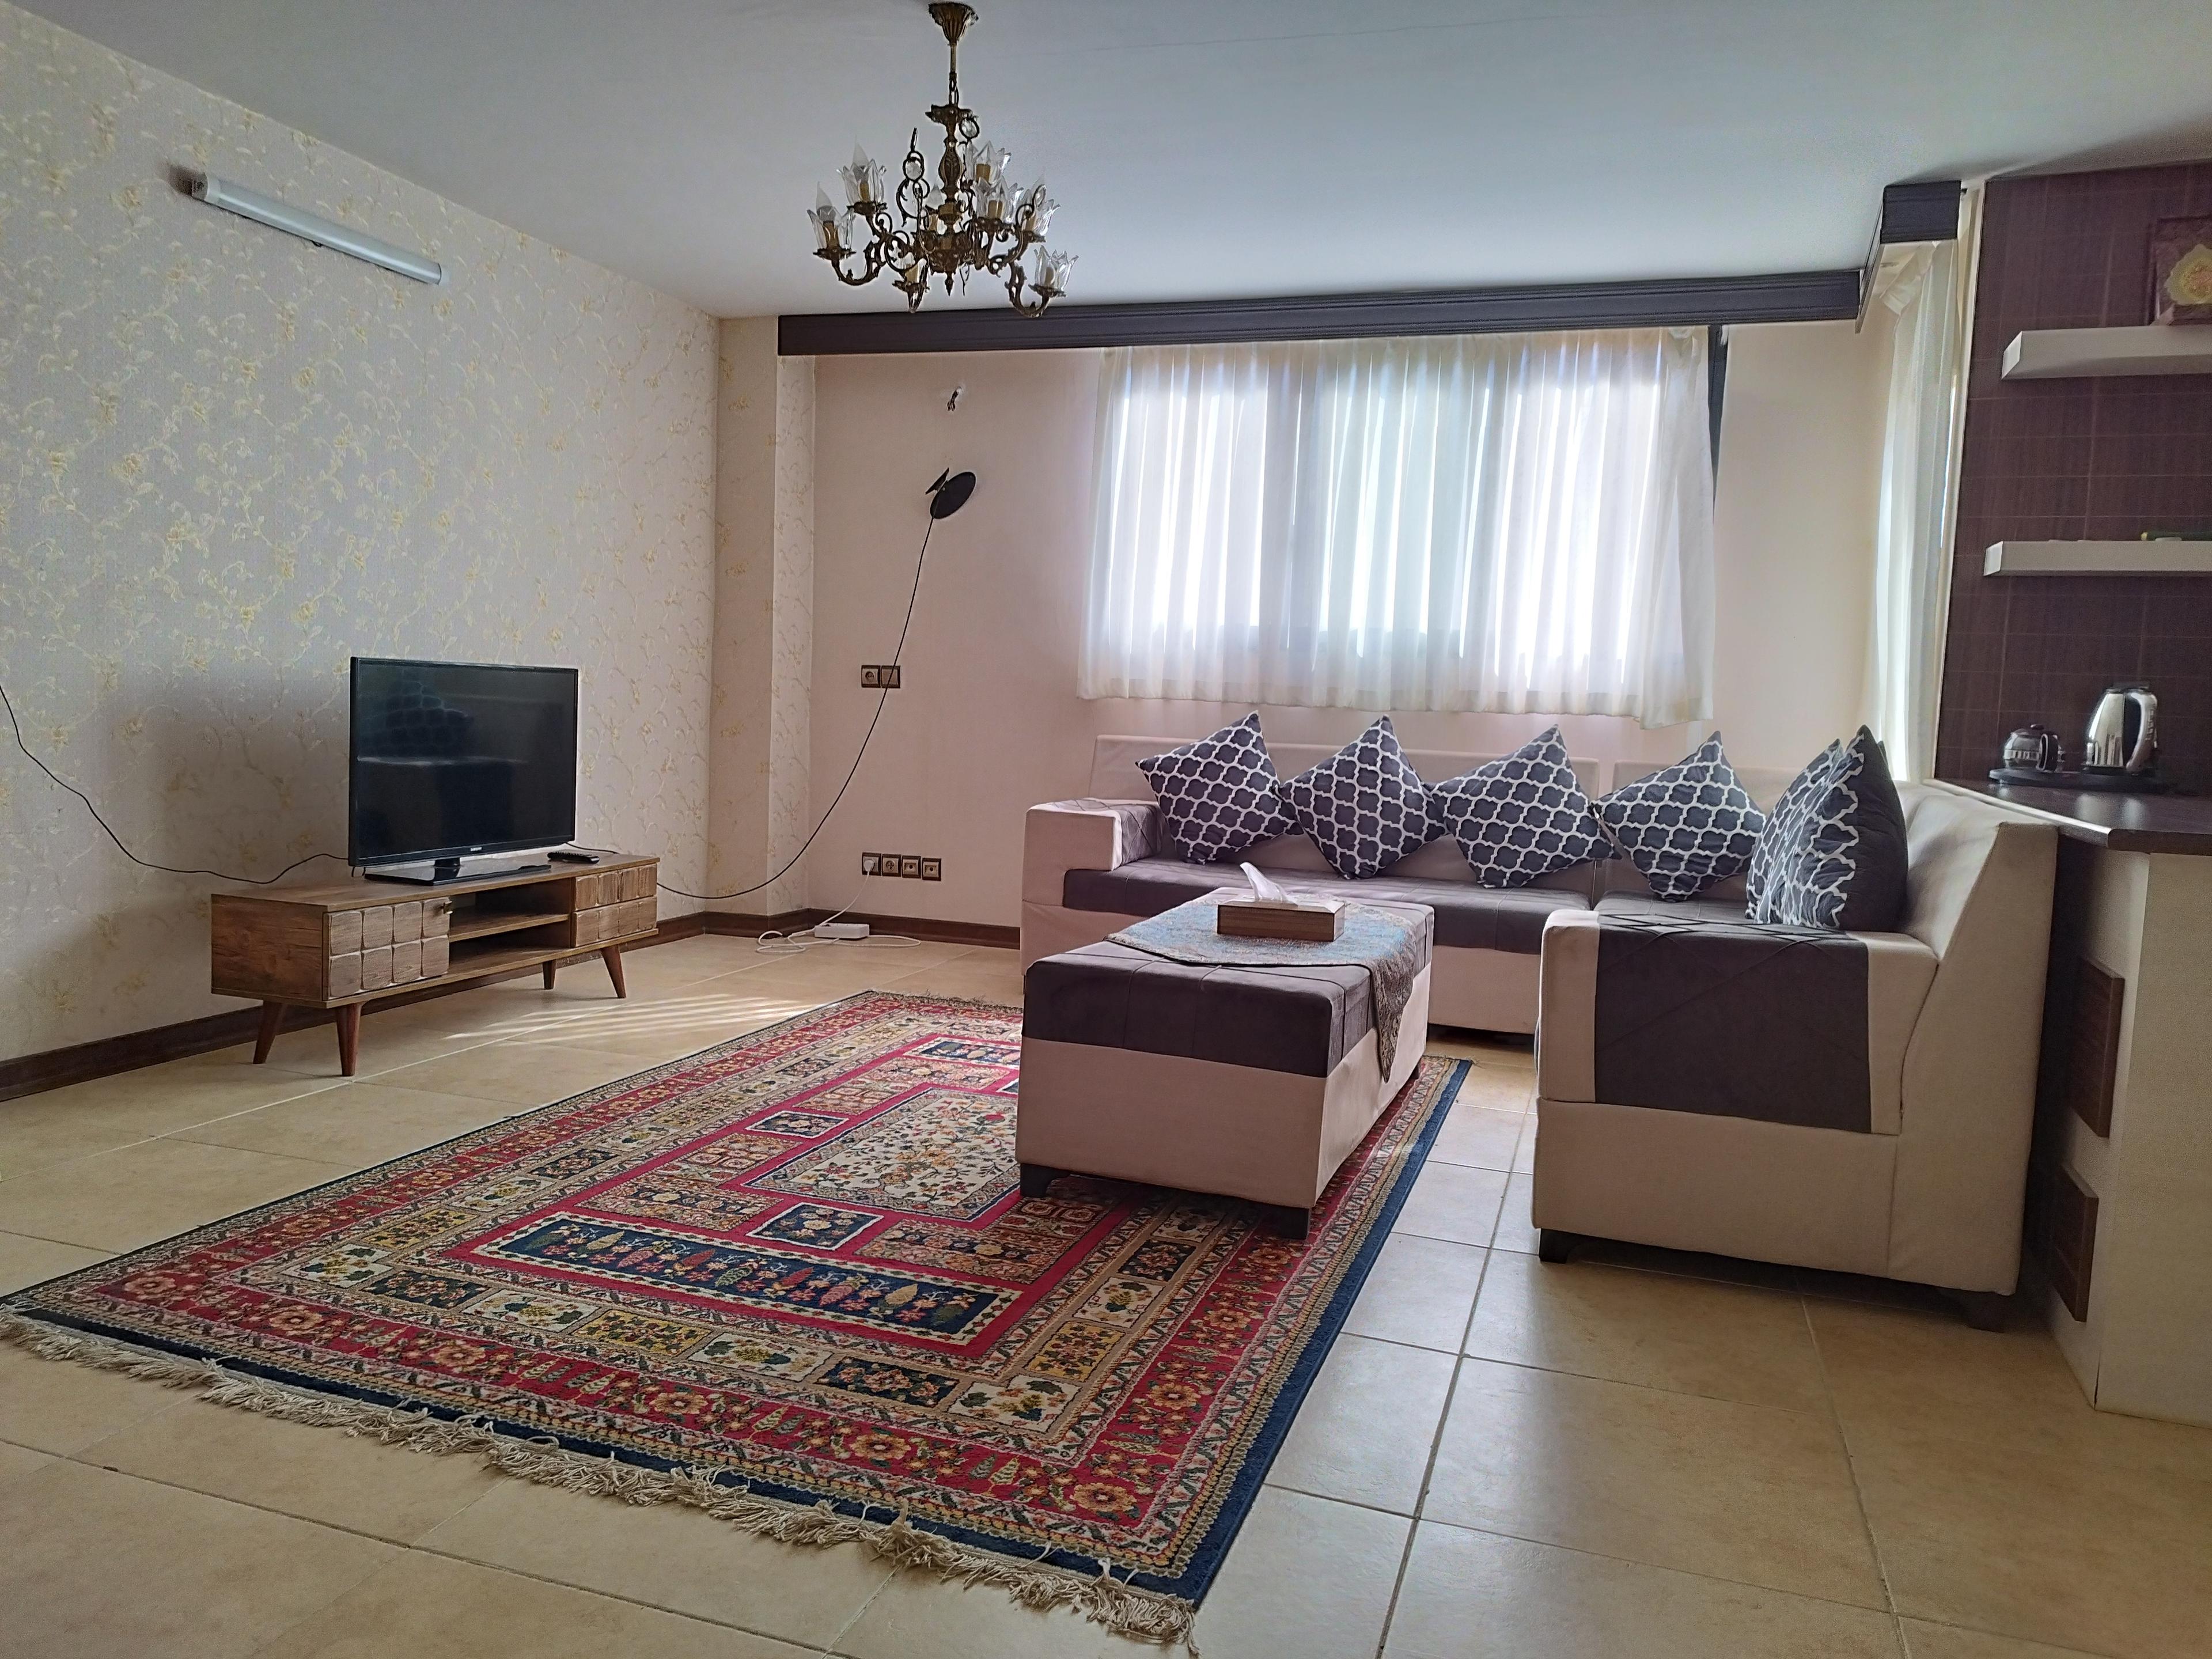 آپارتمان اجاره ای روزانه در اصفهان